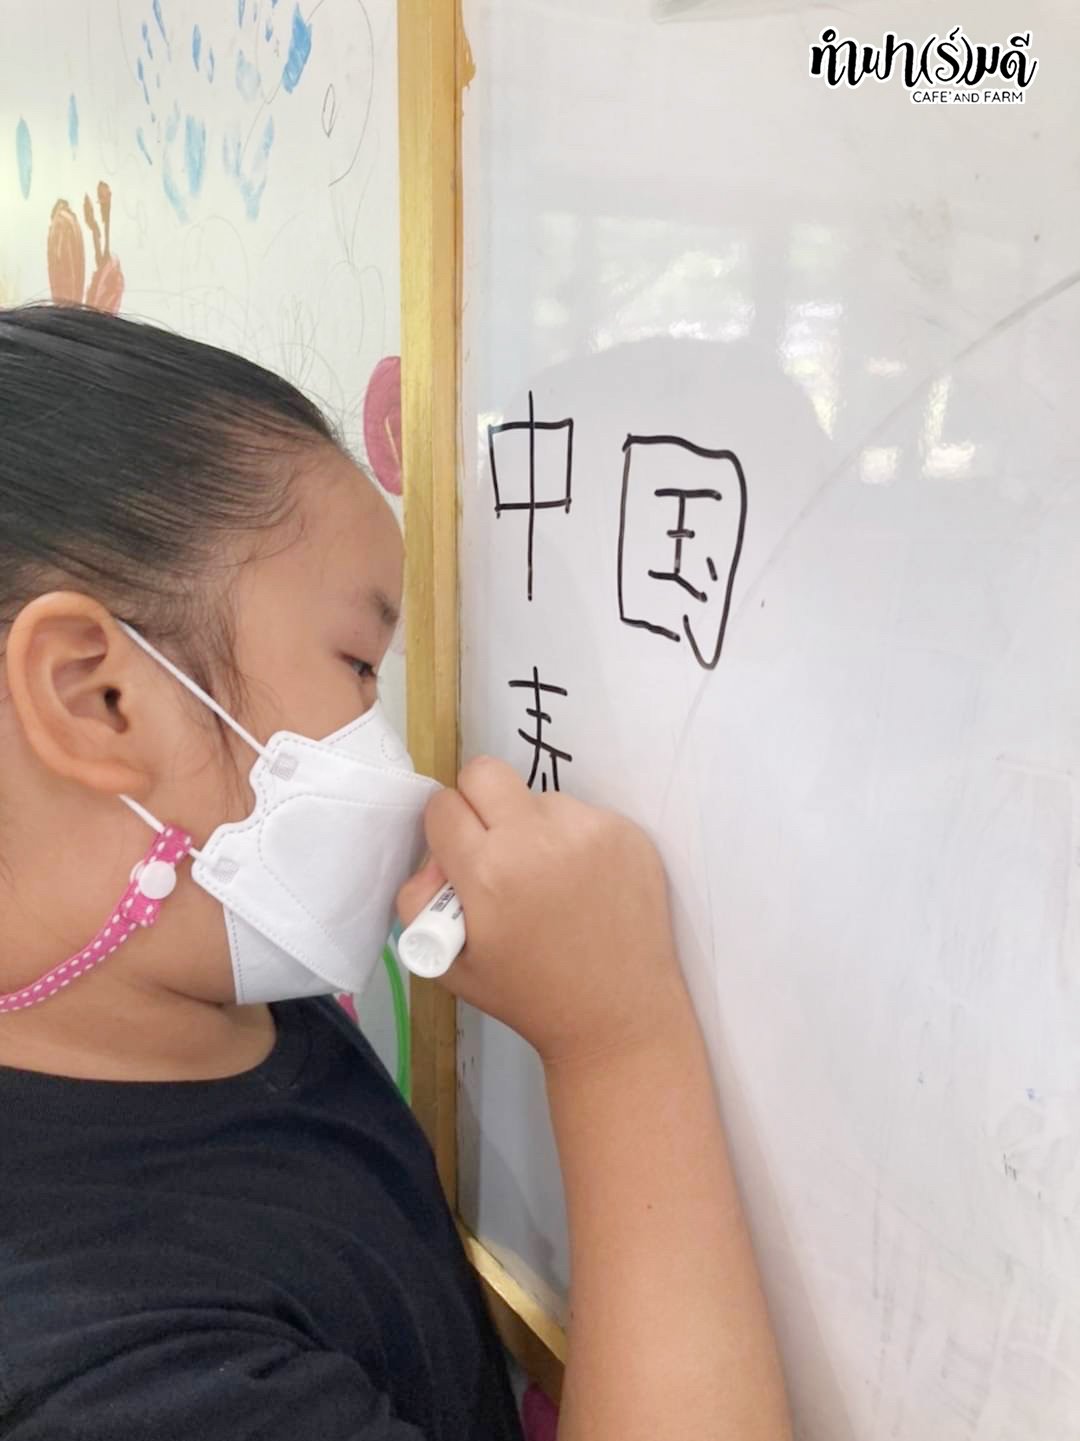 Fun Run Learn Chinese Class 1 (Week 9)